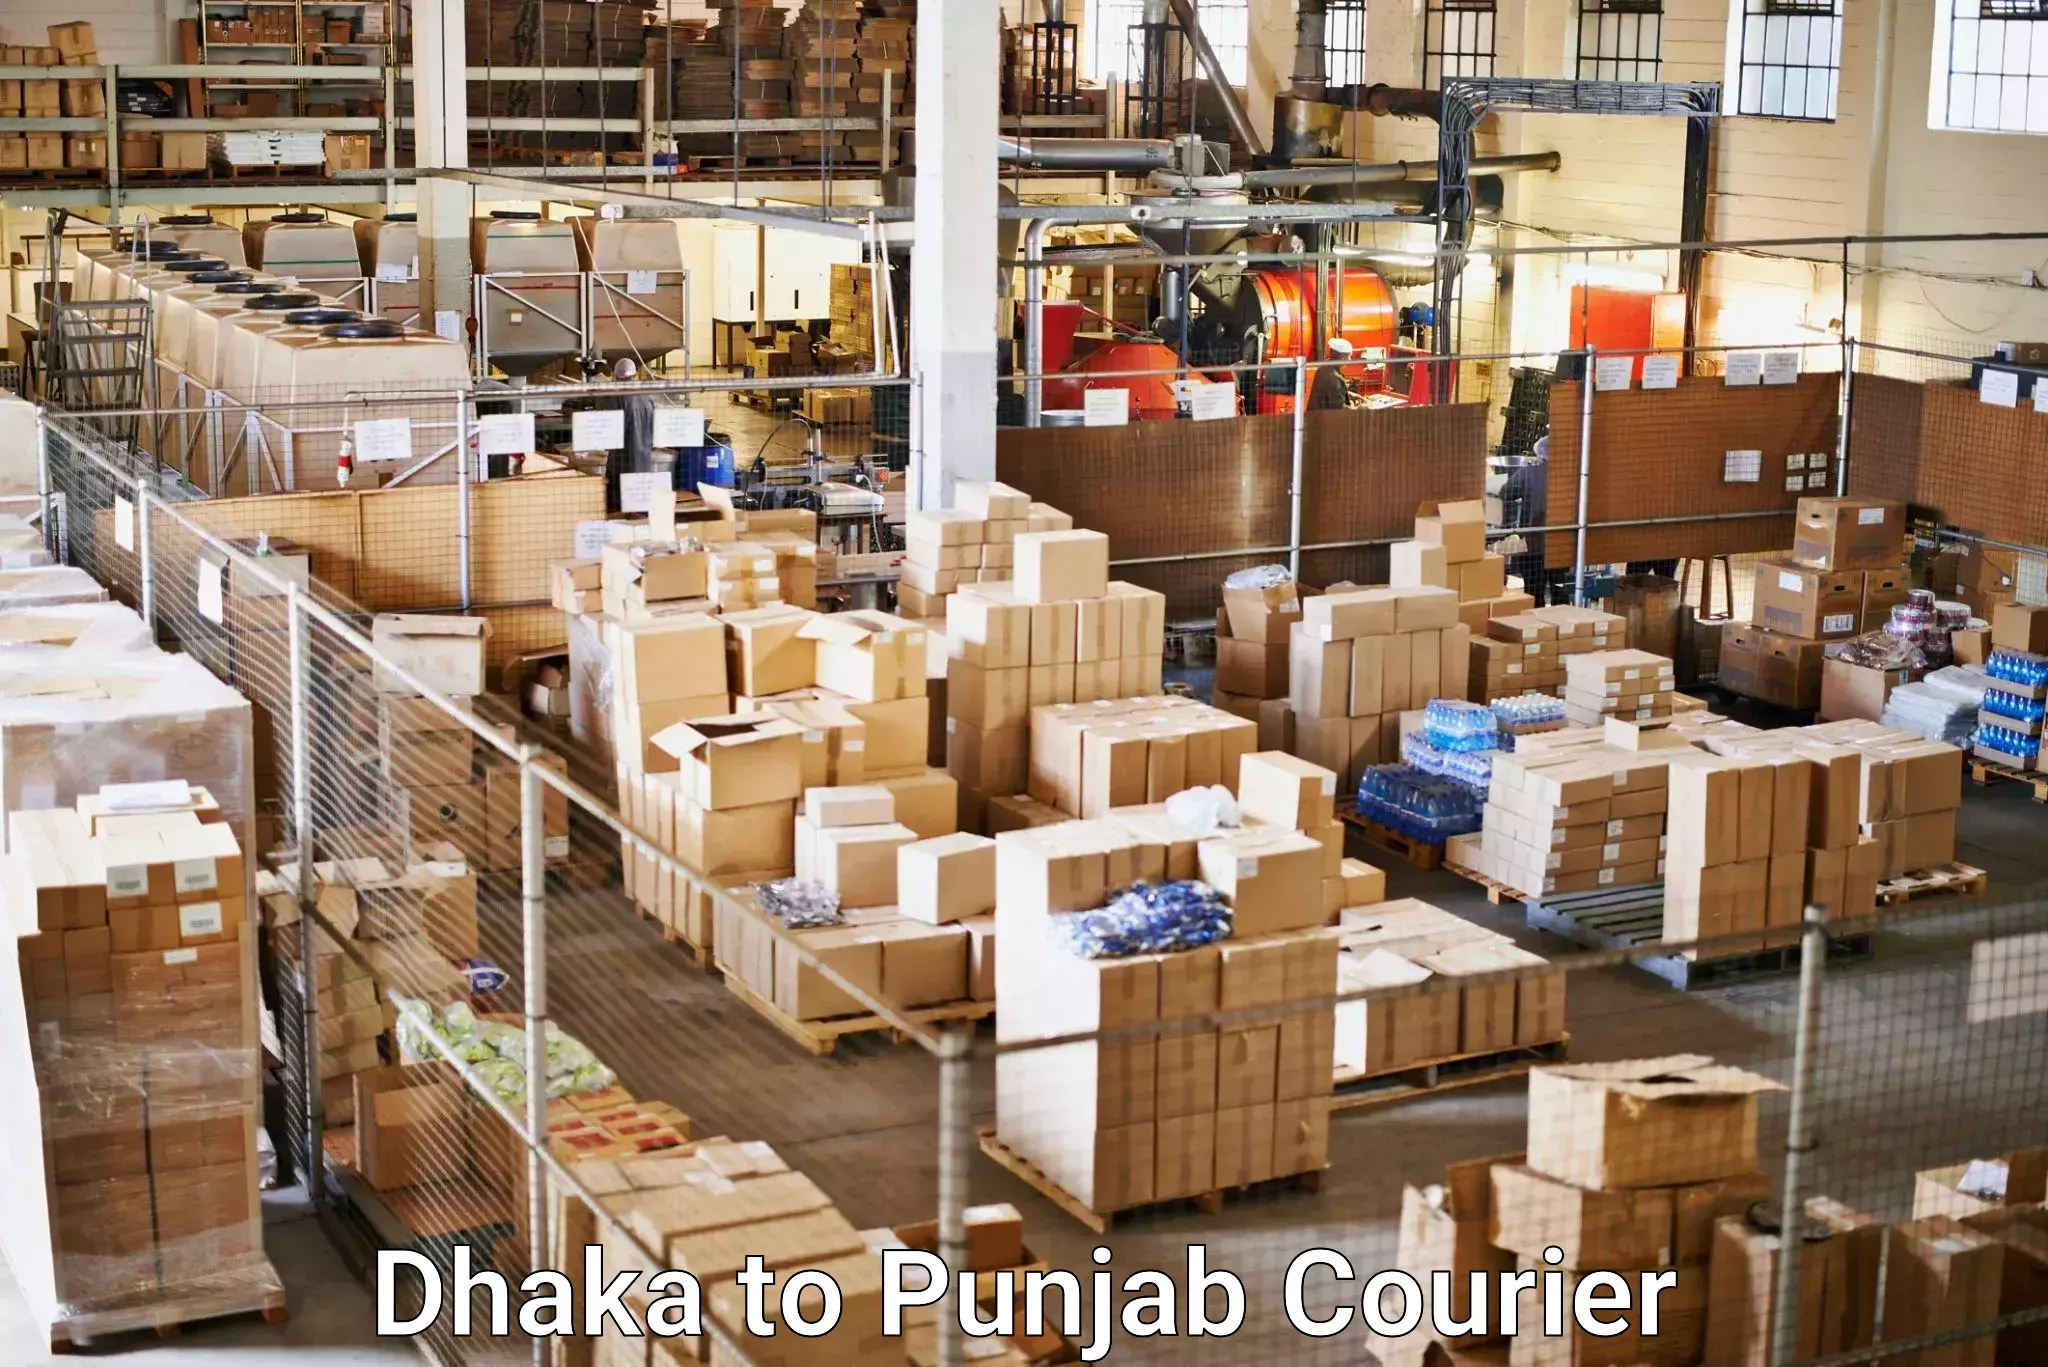 Doorstep delivery service Dhaka to Tarsikka